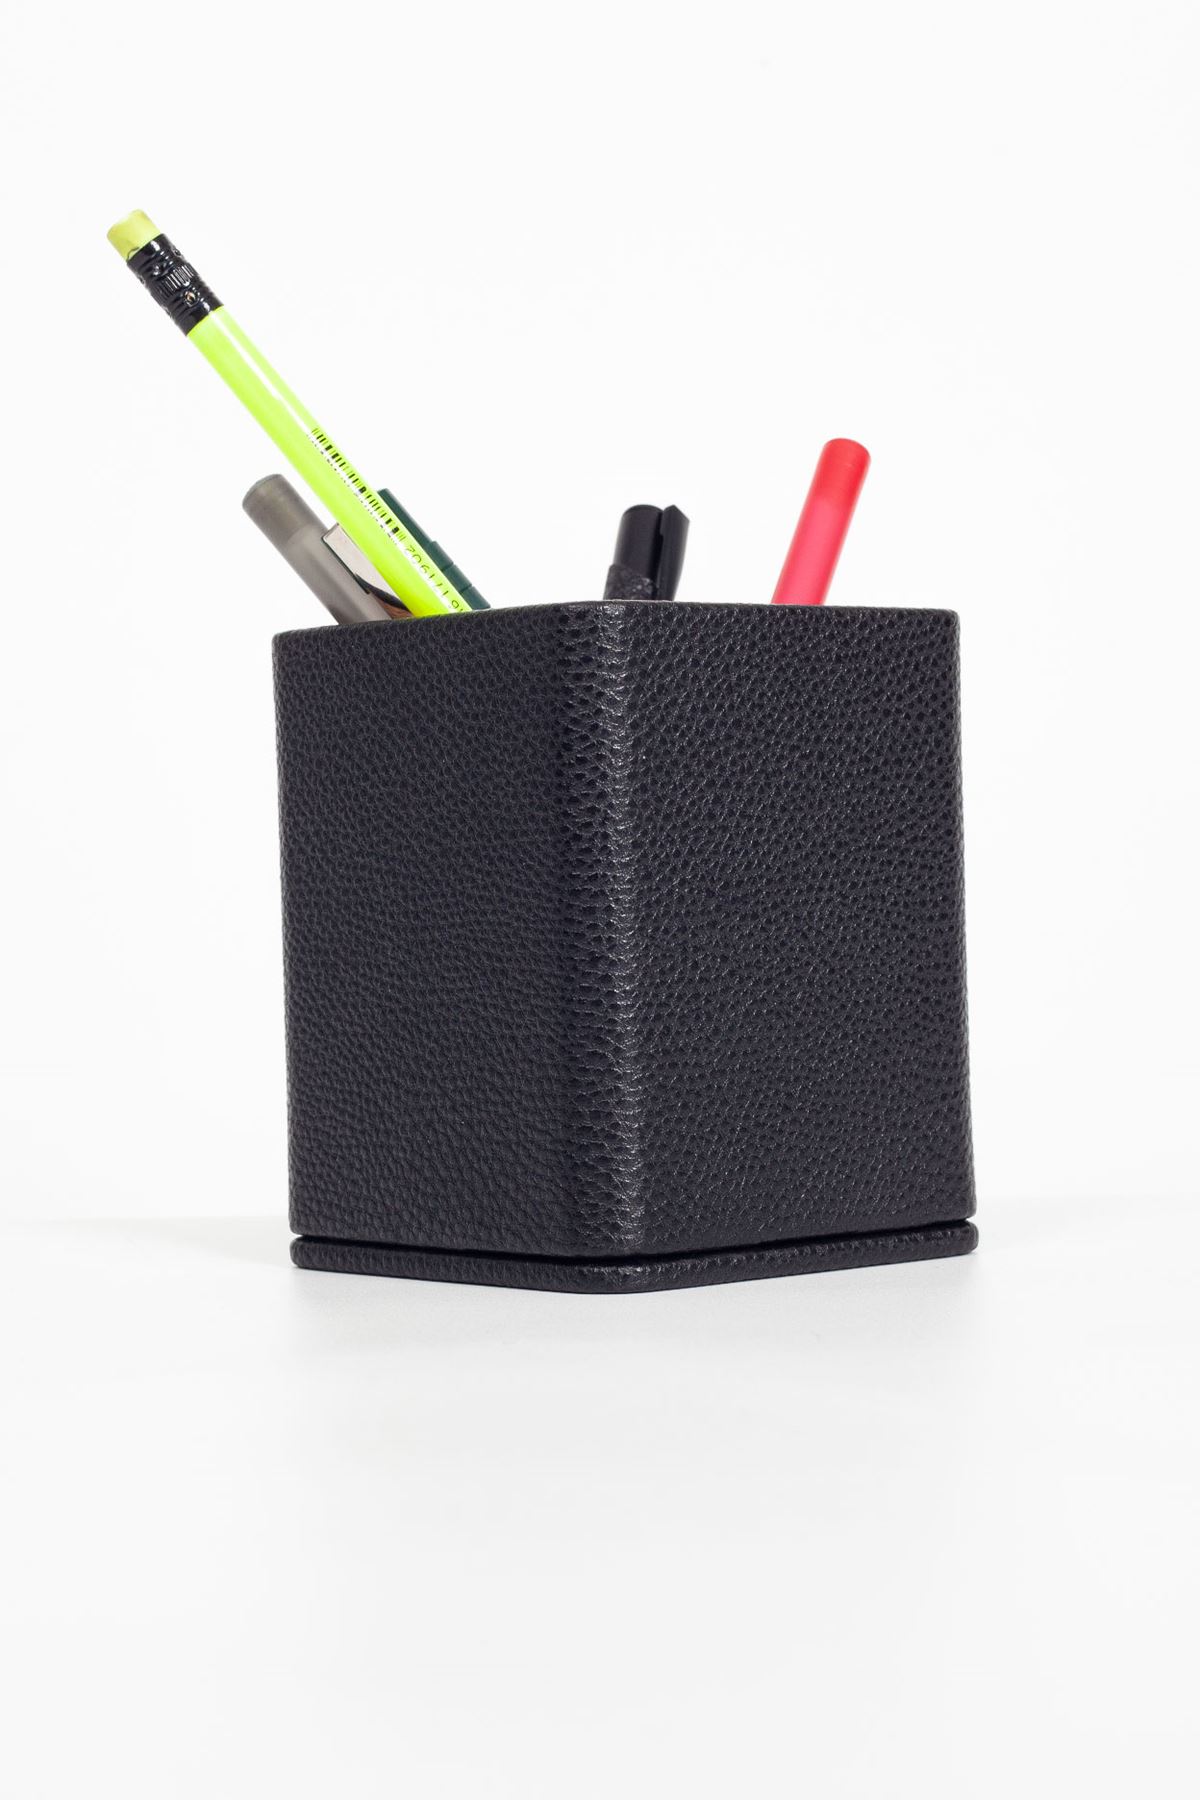 Desktop Square Wooden Detailed Pencil Holder Black